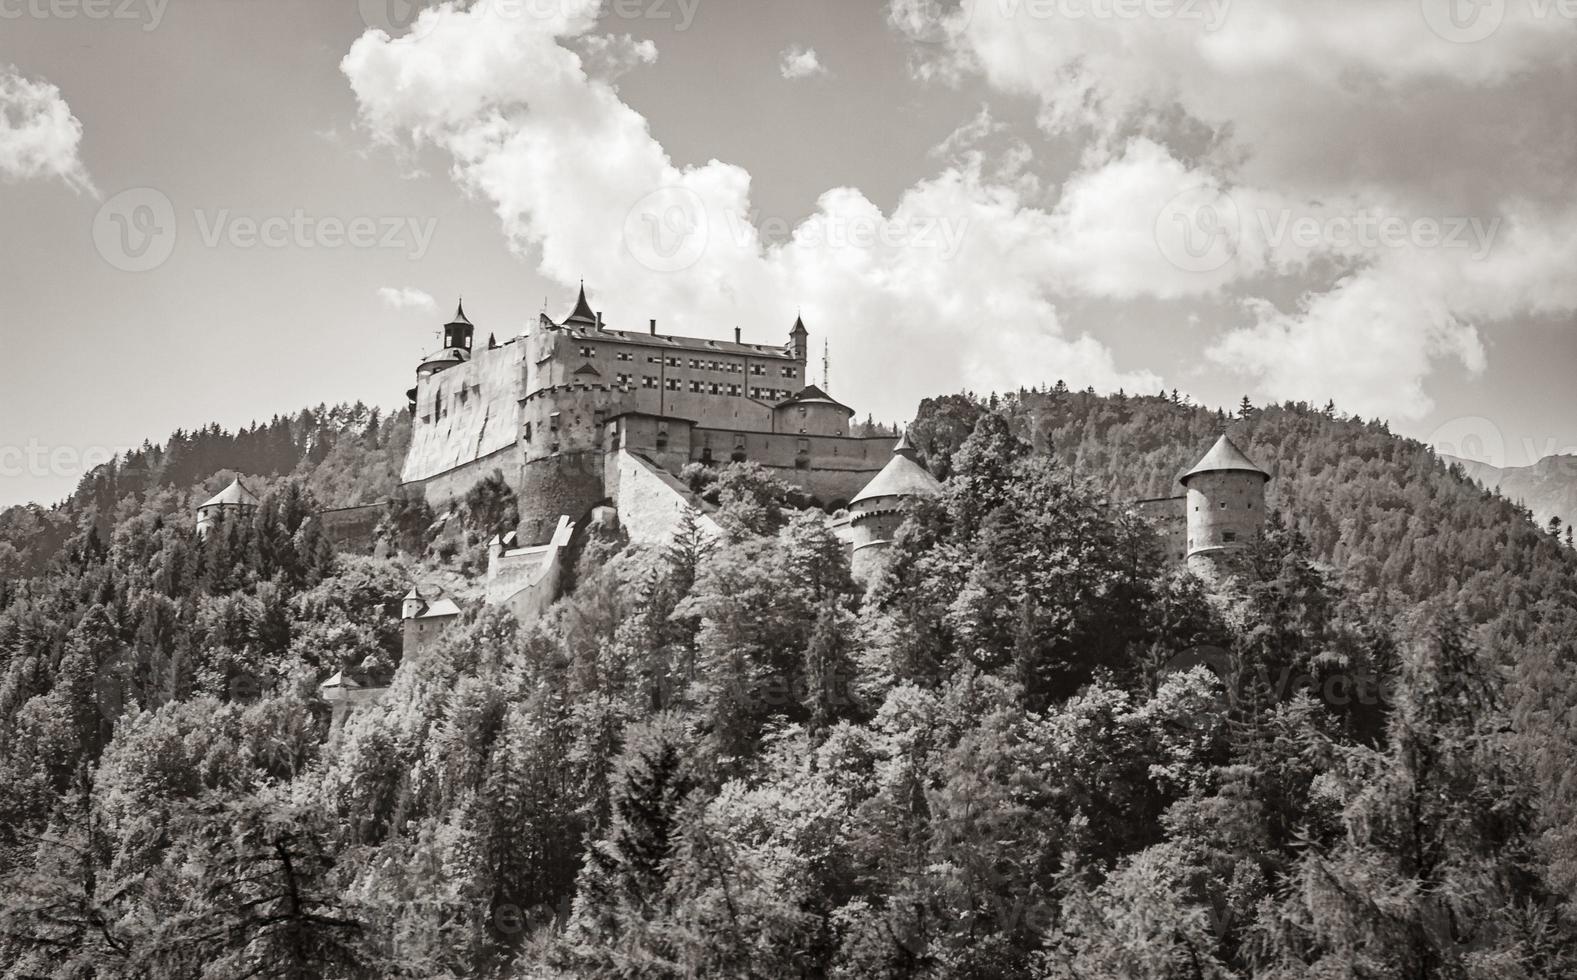 Castle Hohenwerfen chateau fortress on mountain in Werfen Salzburg Austria. photo